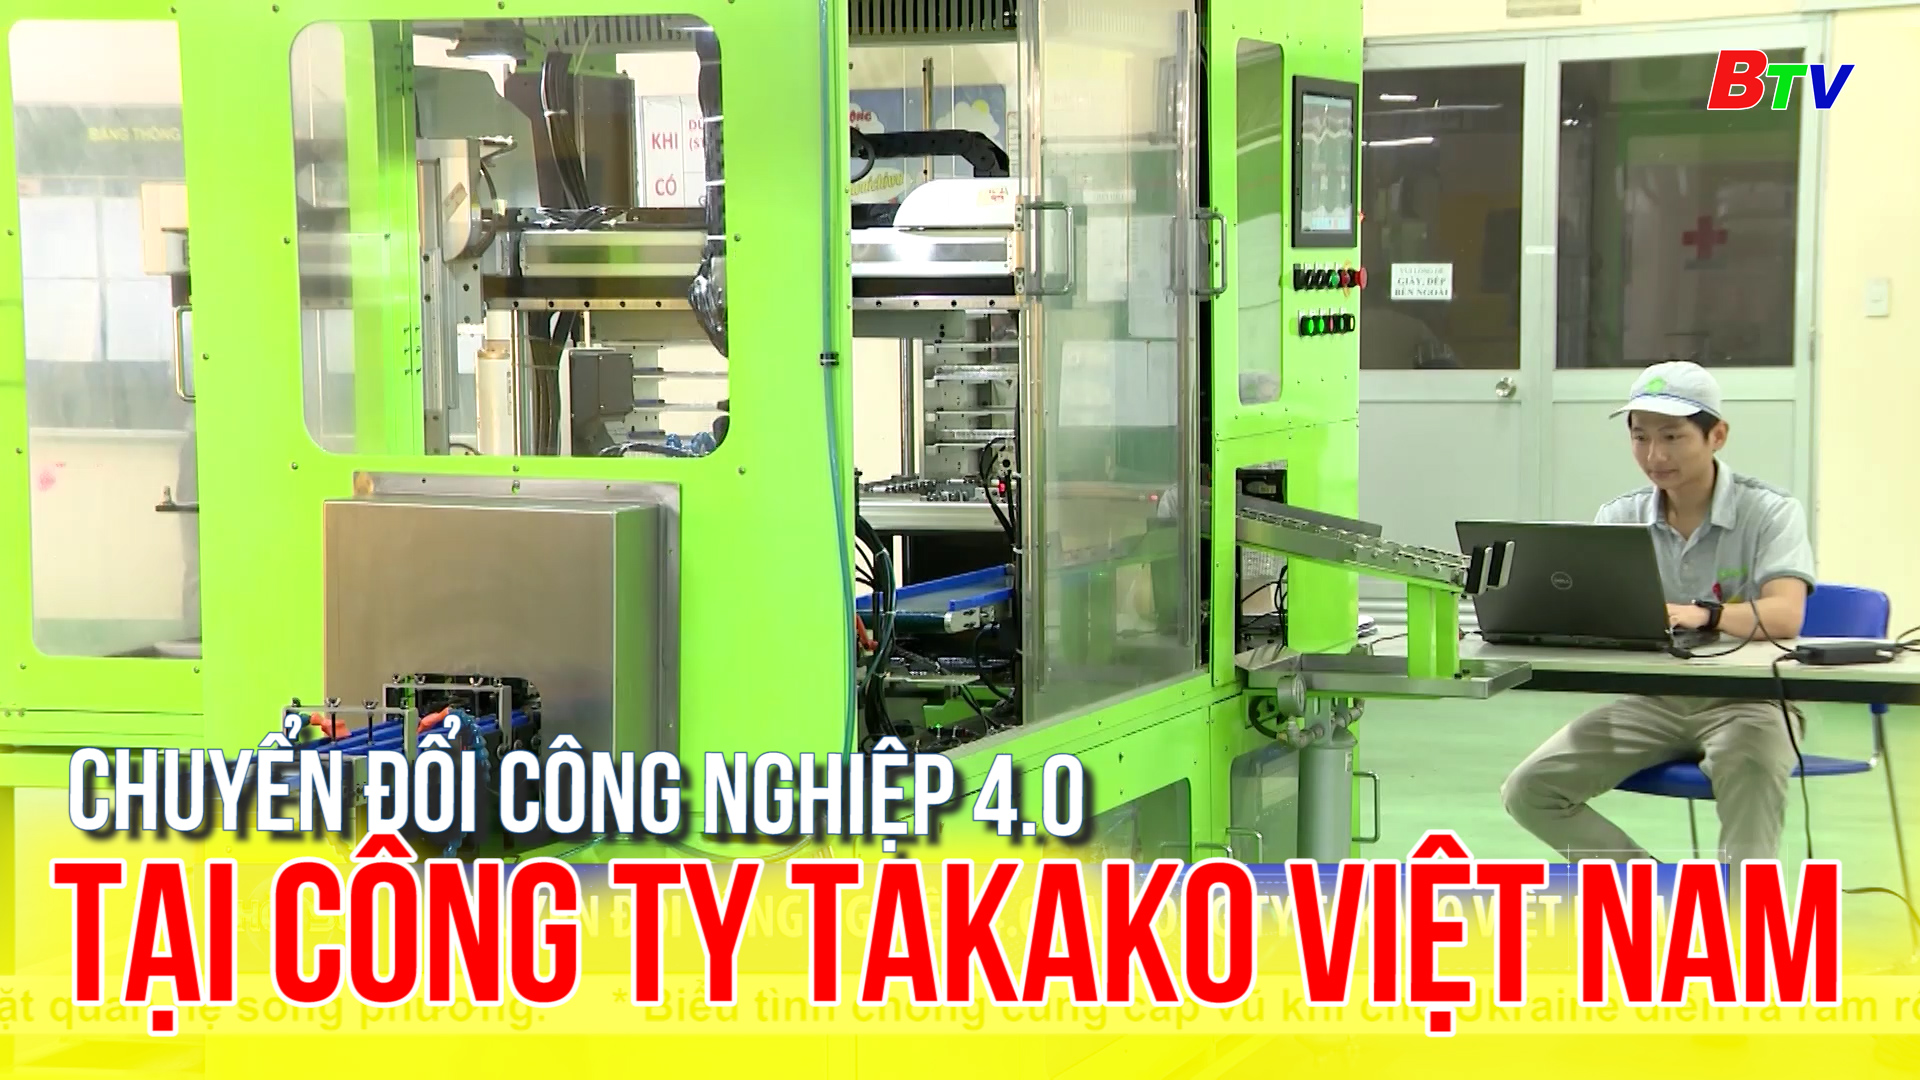 Chuyển đổi công nghiệp 4.0 tại công ty Takako Việt Nam